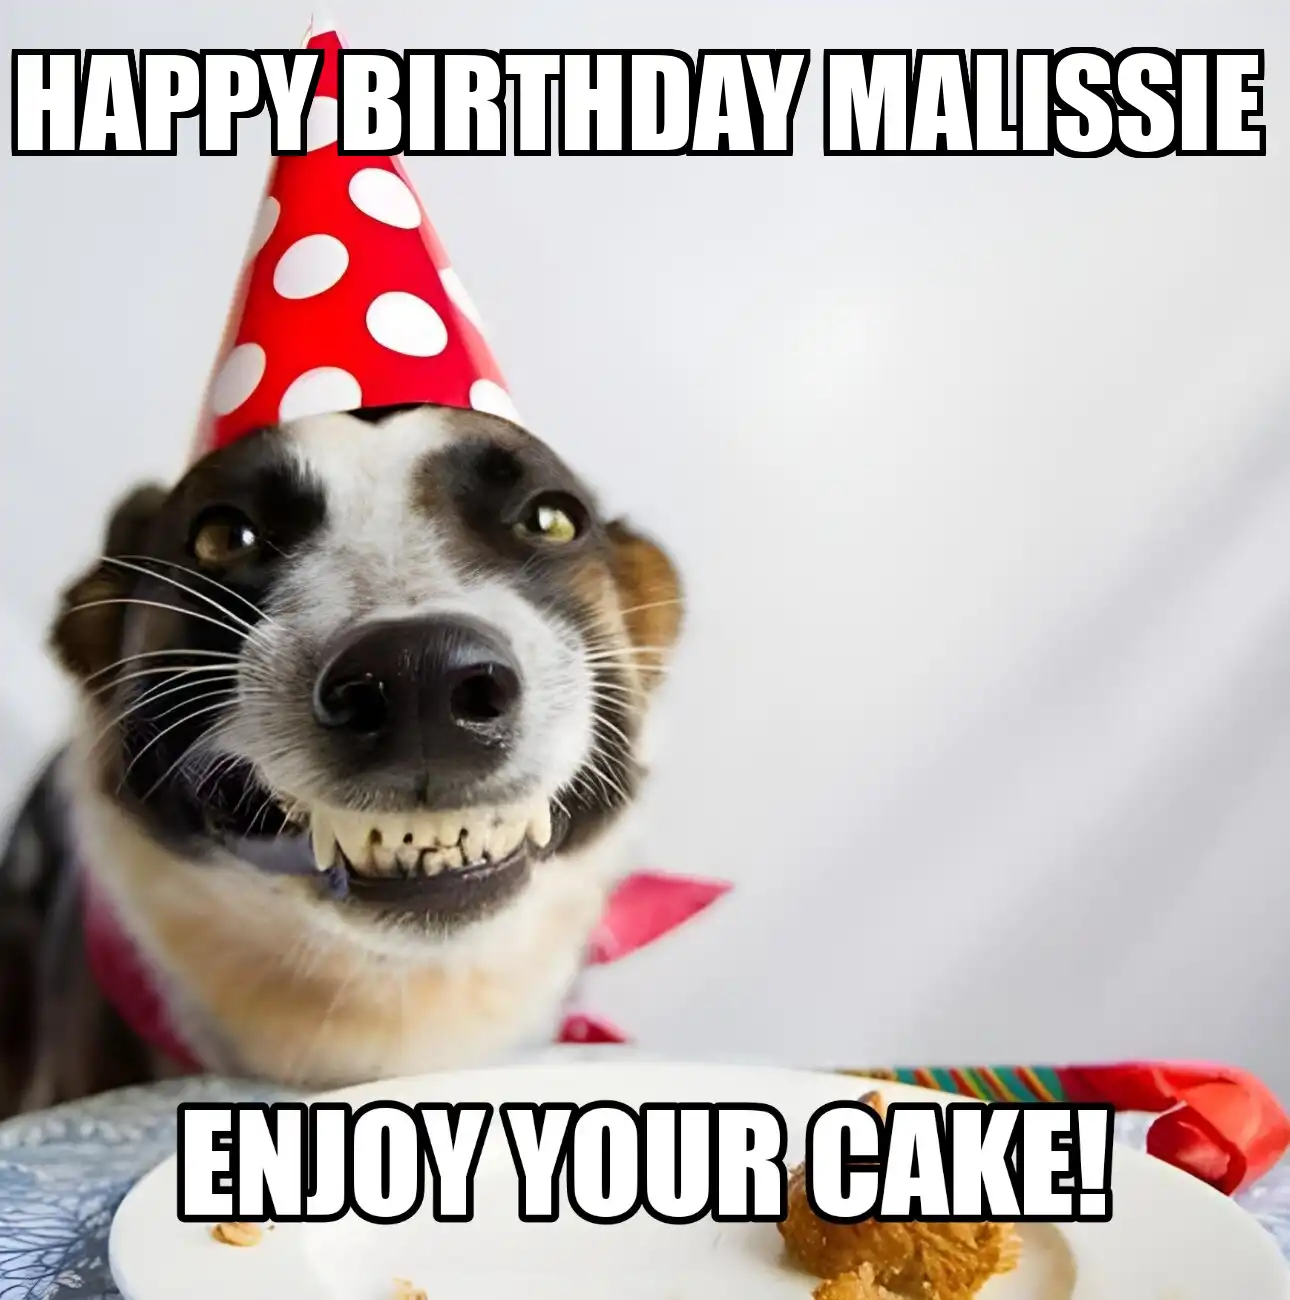 Happy Birthday Malissie Enjoy Your Cake Dog Meme